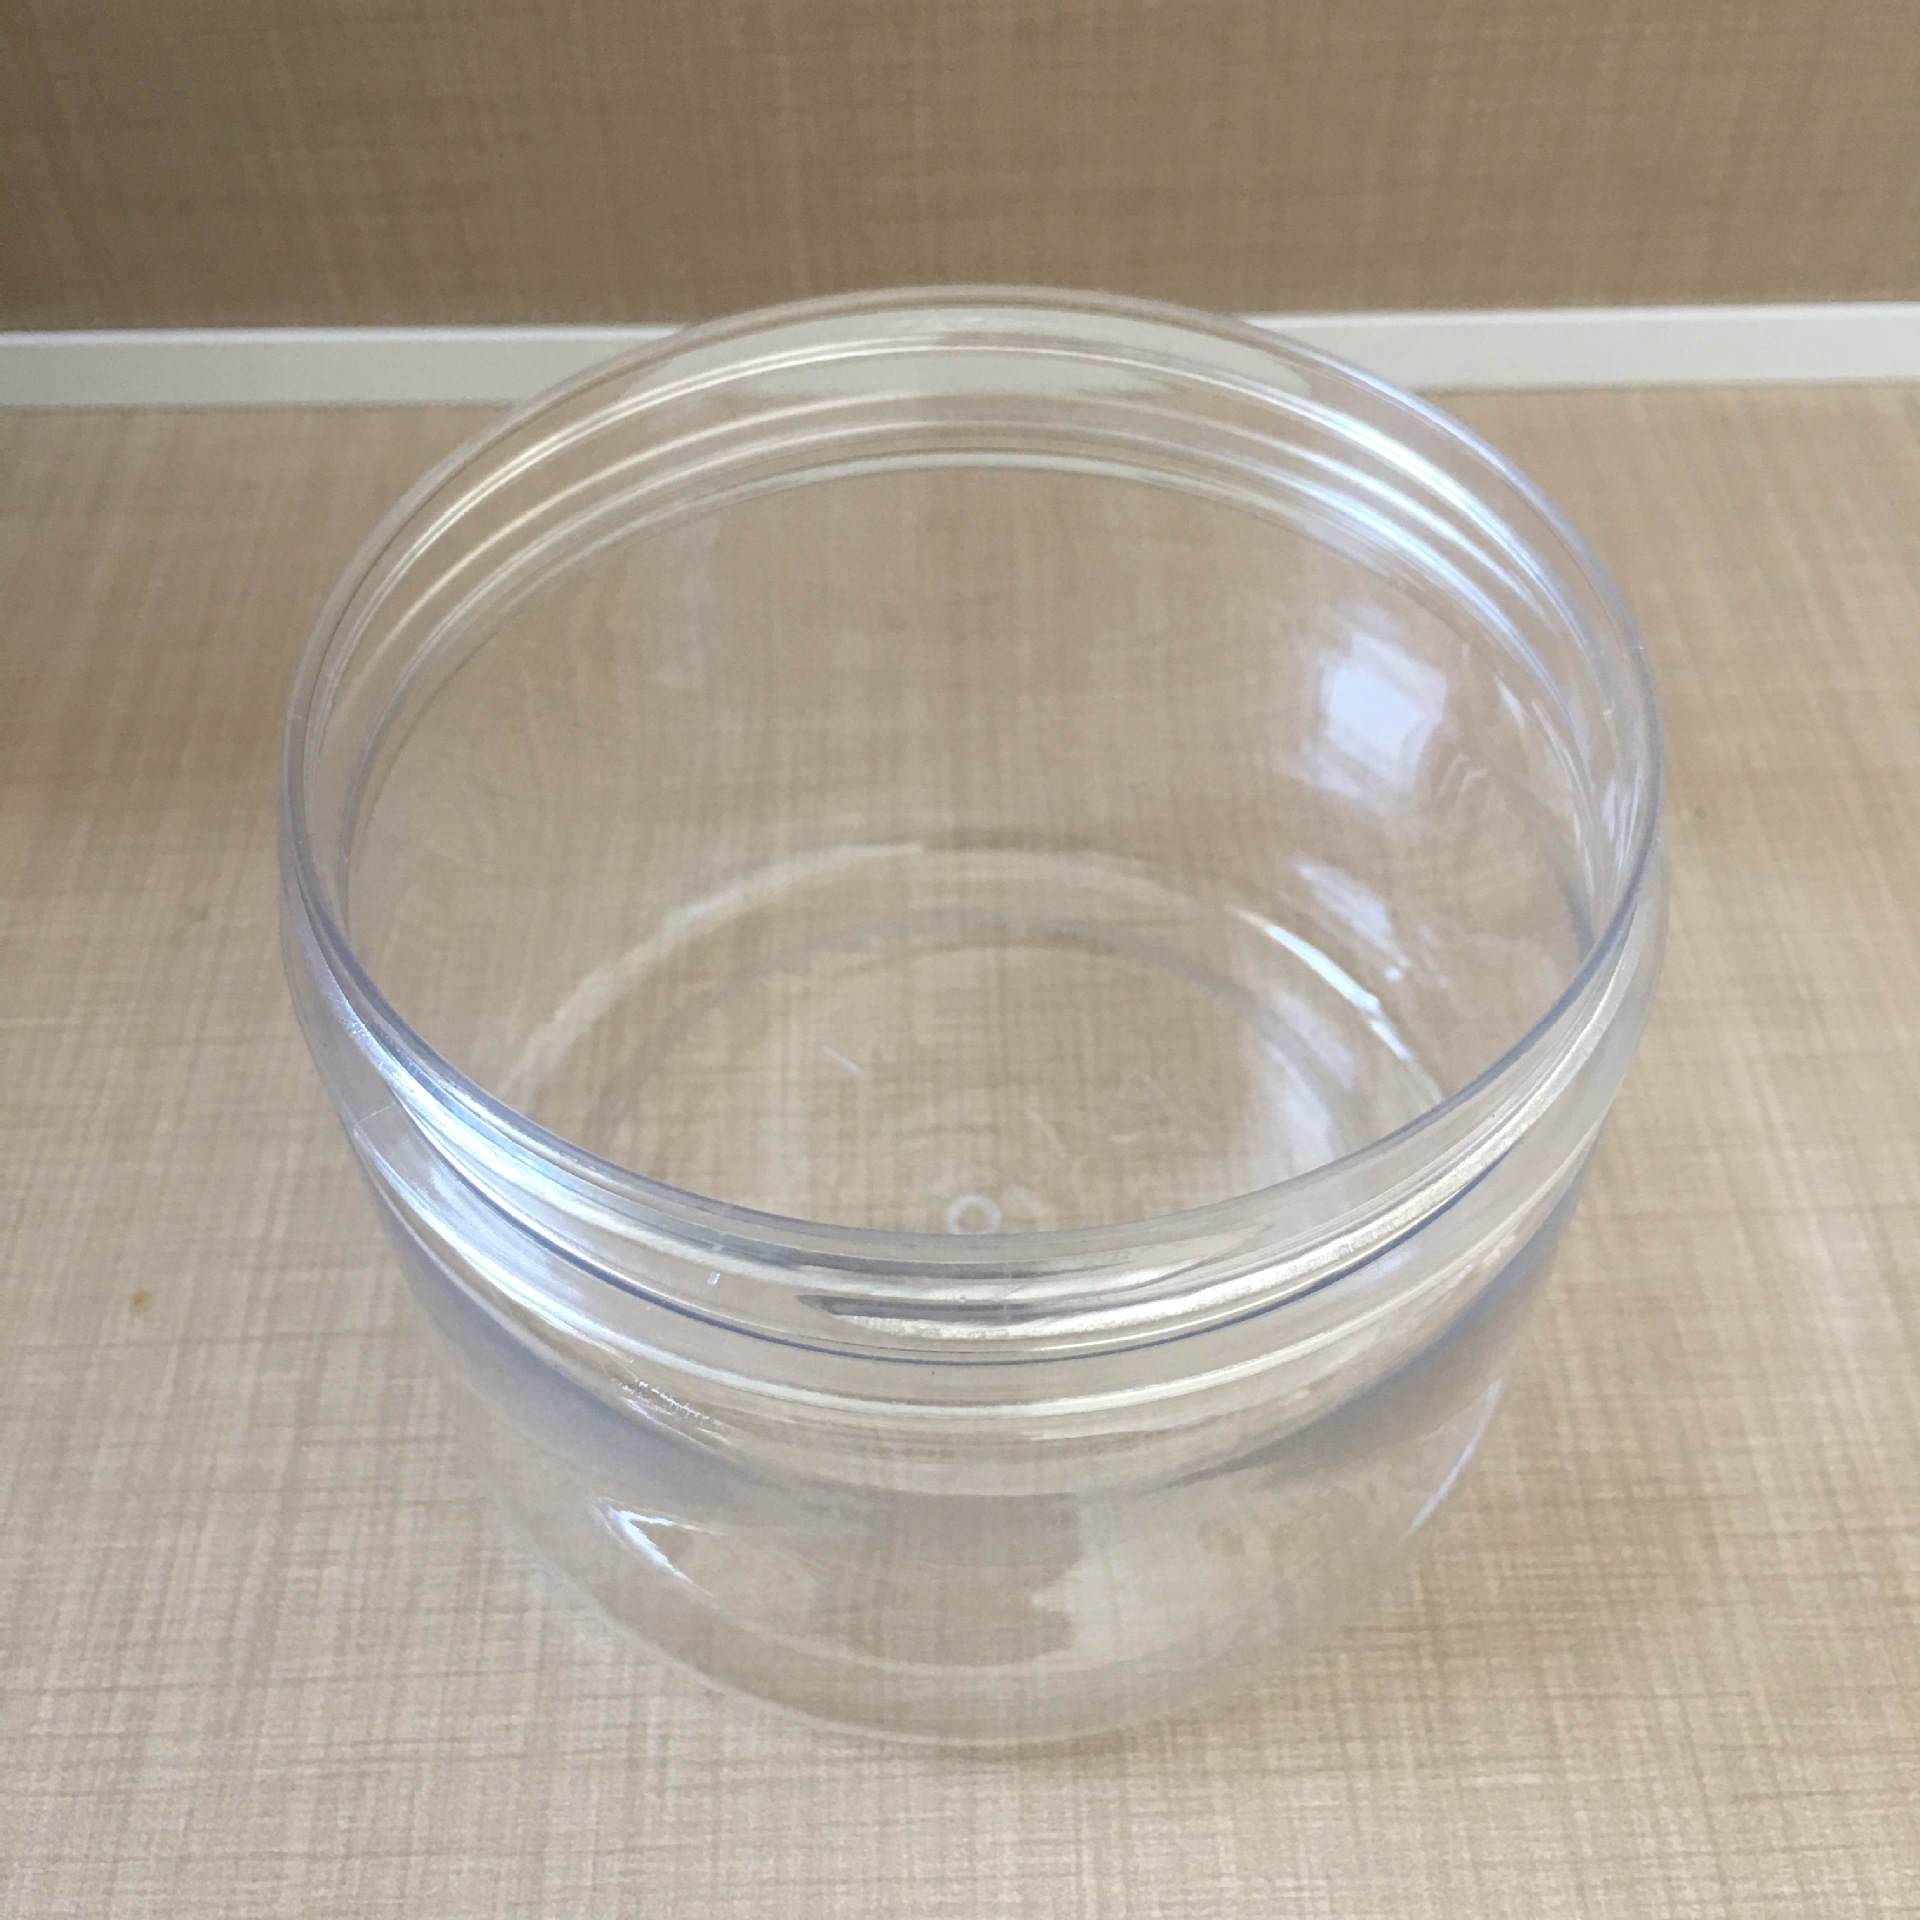 厂家直销pet塑料罐食品塑料罐药用塑料罐包装罐现货供应价格优惠示例图9